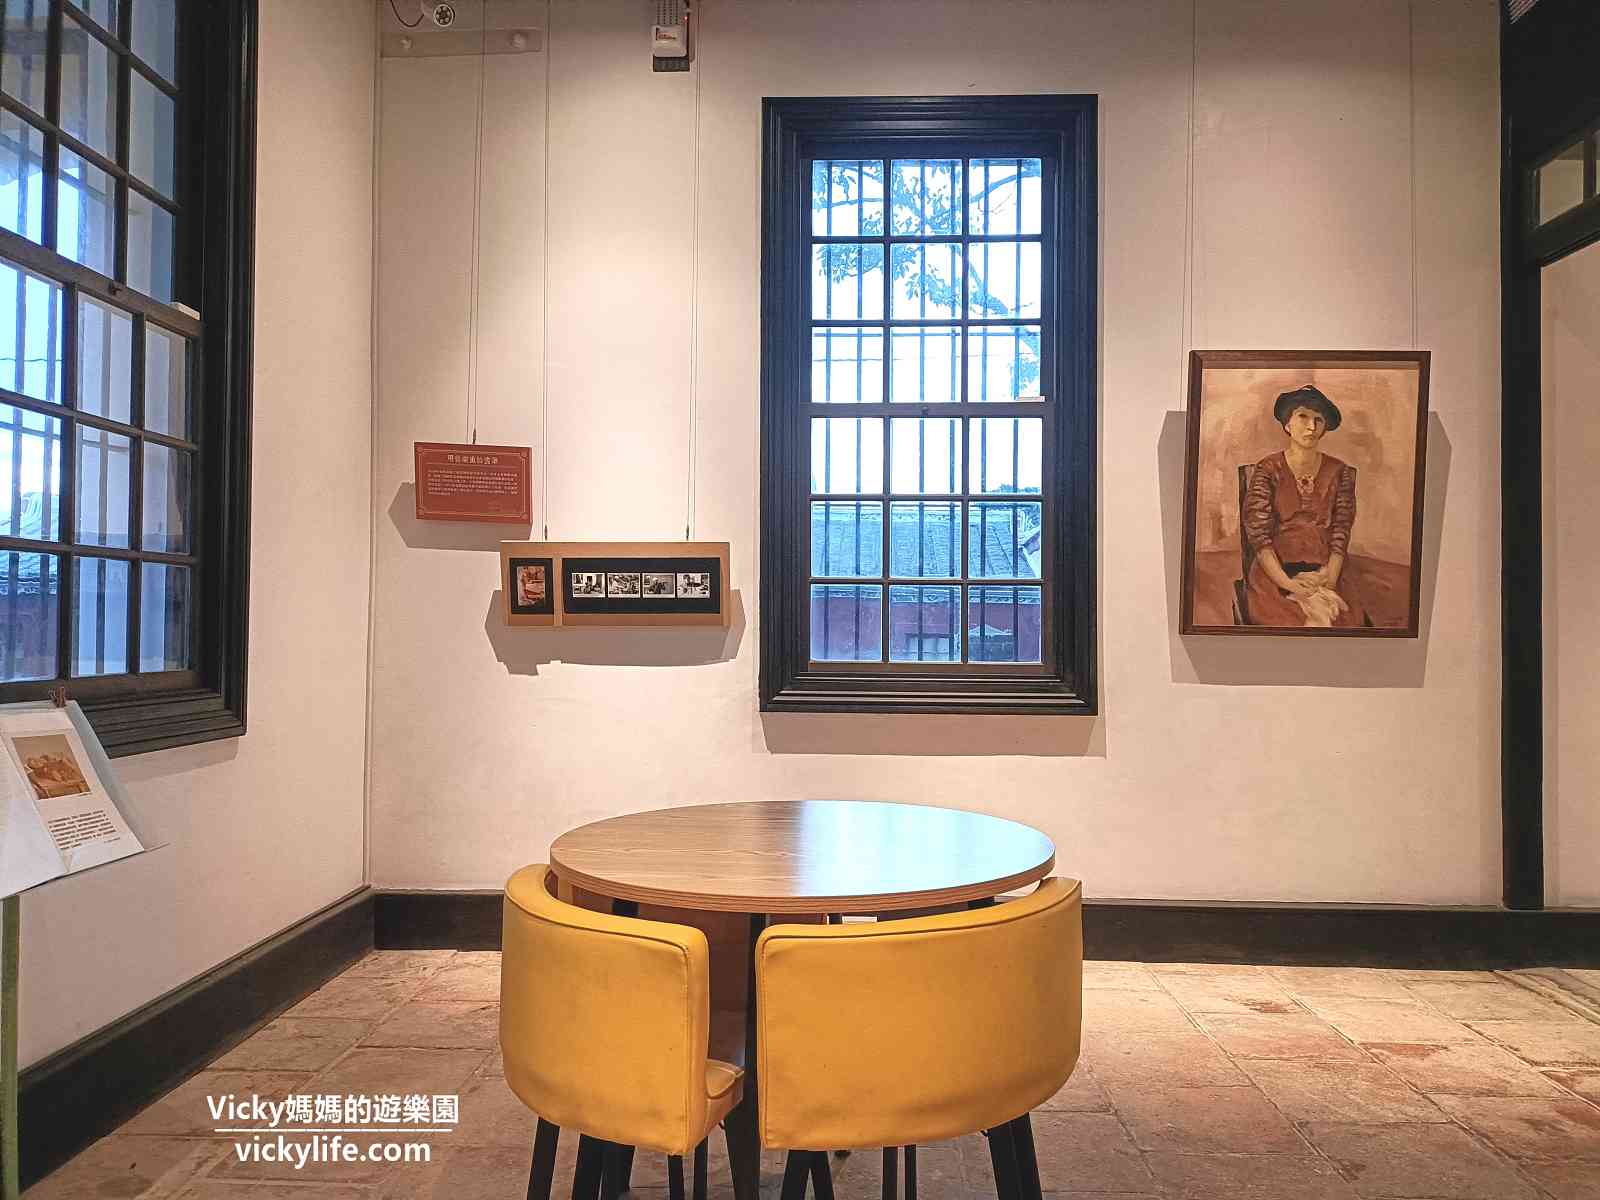 柳營景點︱劉啟祥美術紀念館：日洋風情的美麗建築，低調卻顯眼，內斂且優雅